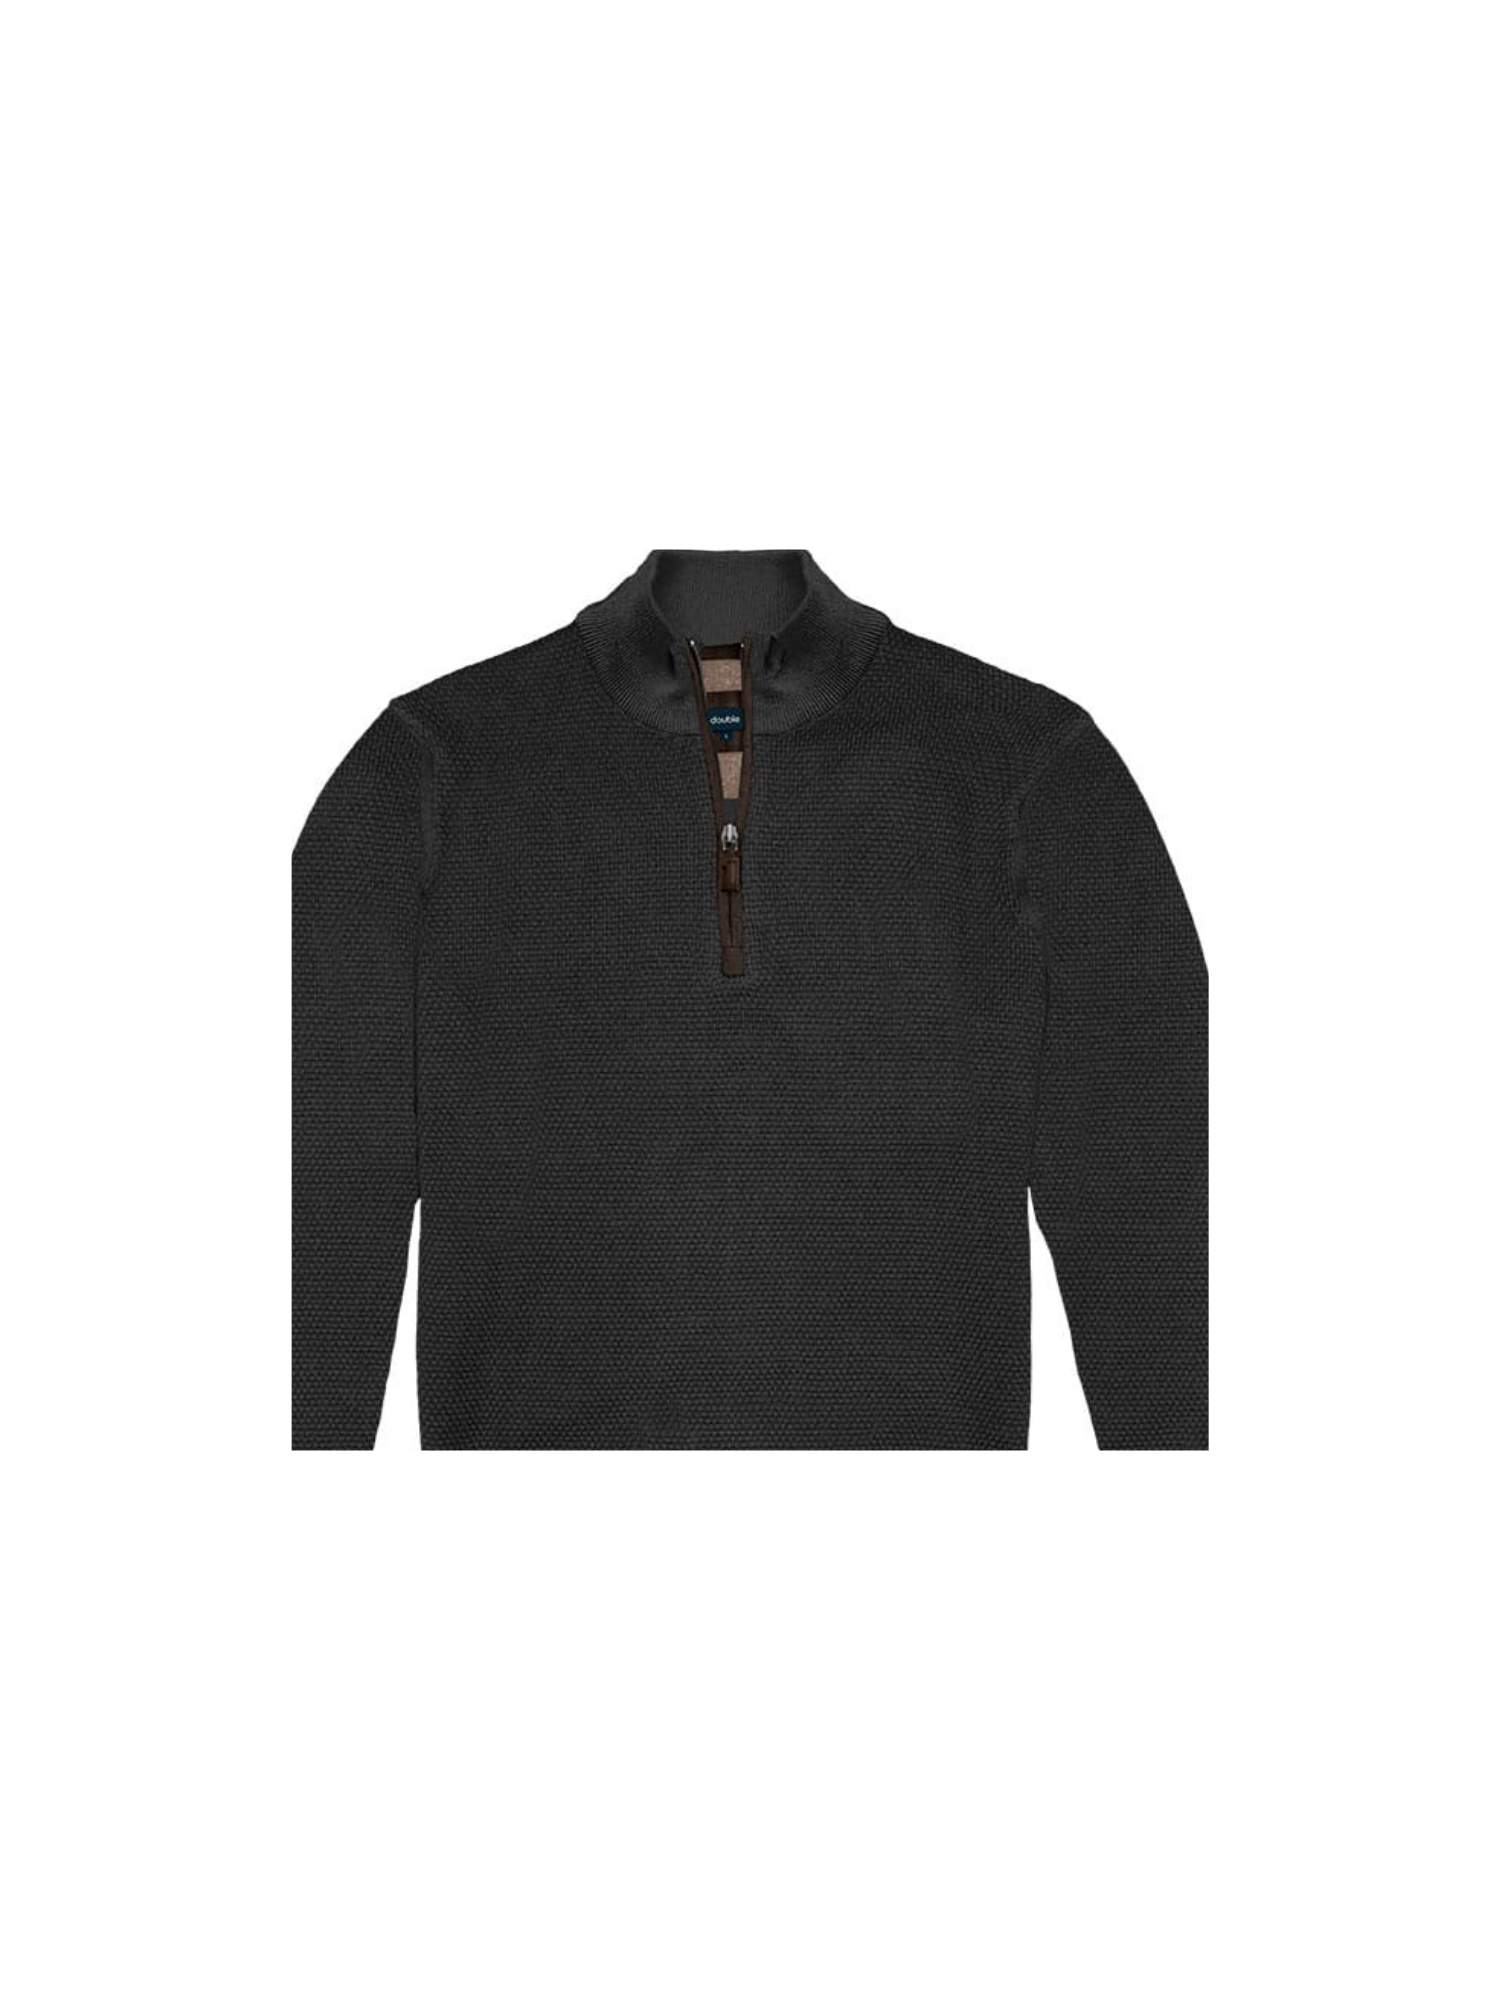 Ανδρική Μπλούζα Πλεκτή με Φερμουάρ Plus Size - Μαύρο